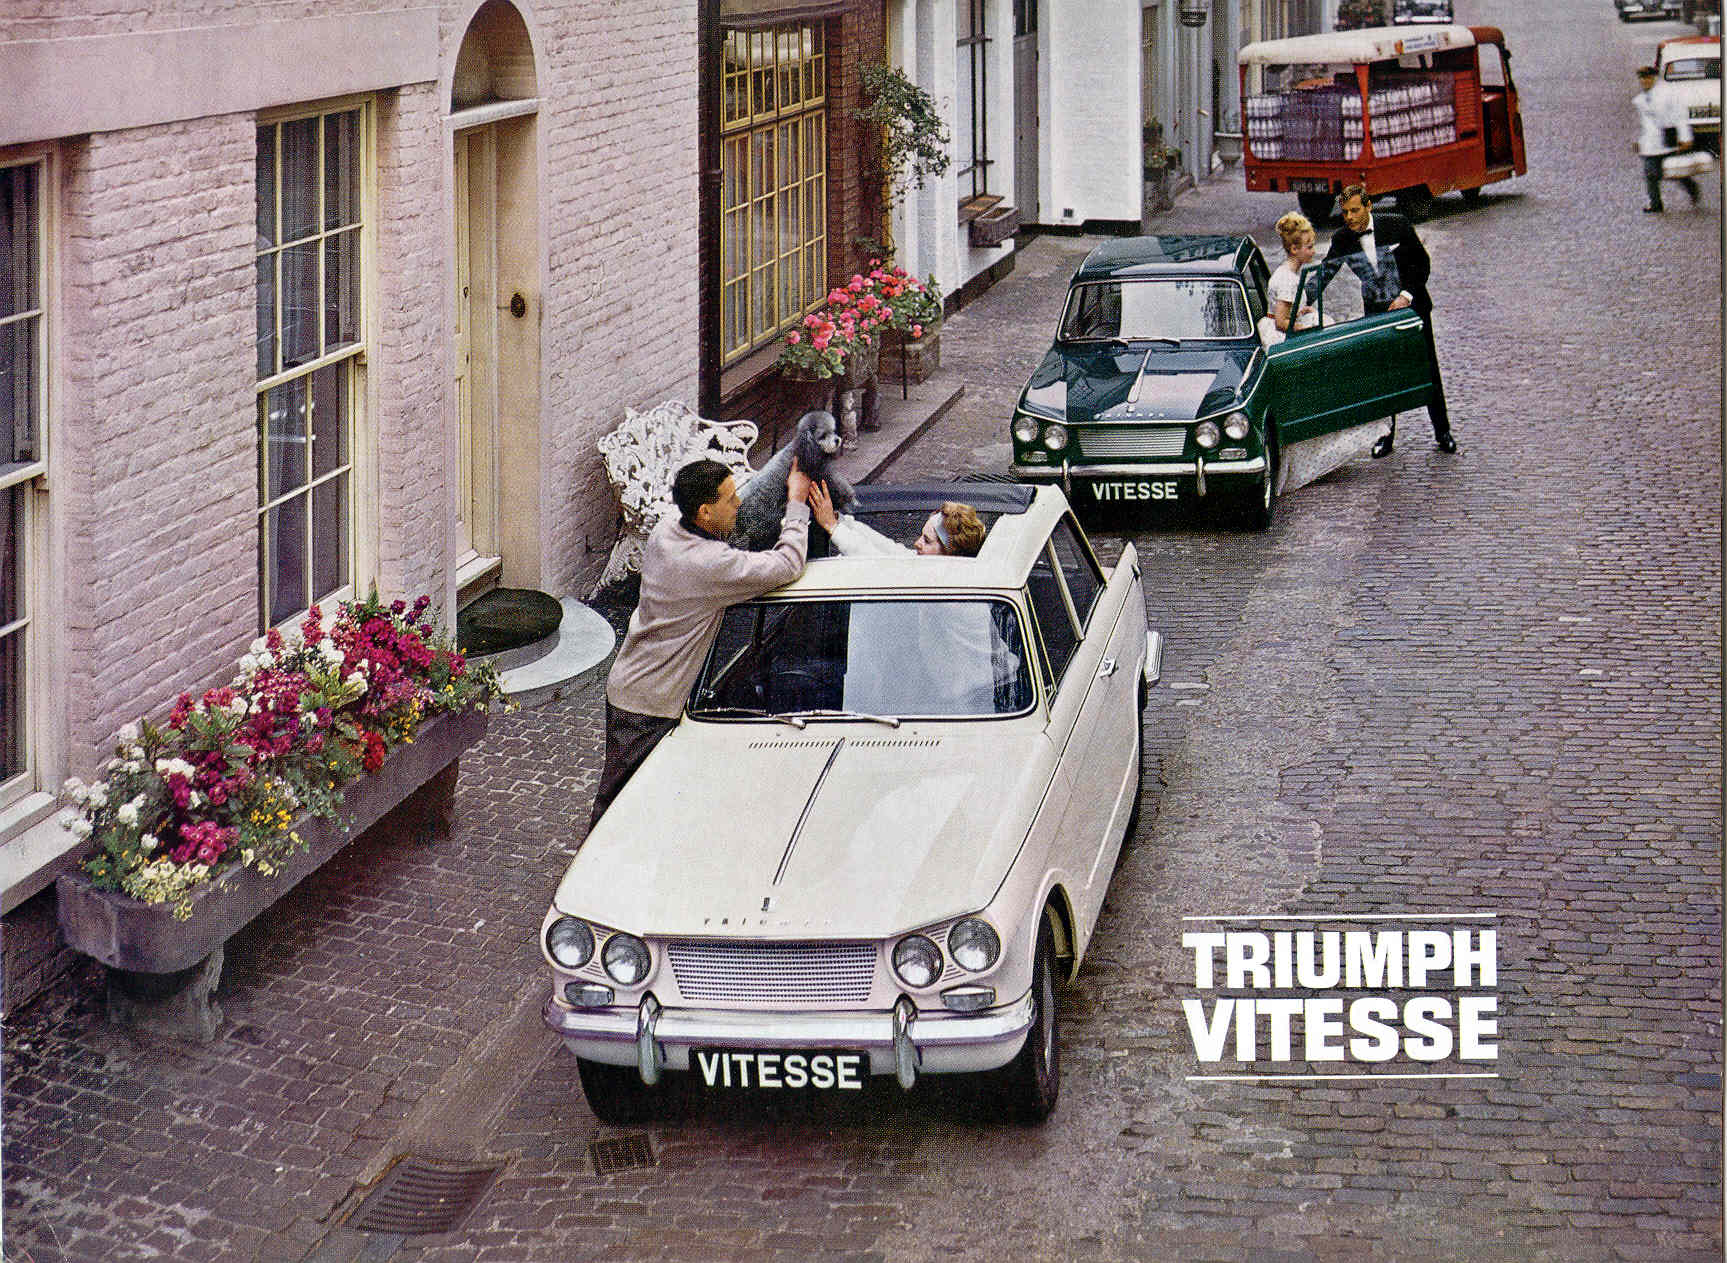 Triumph Vitesse 6 UK!